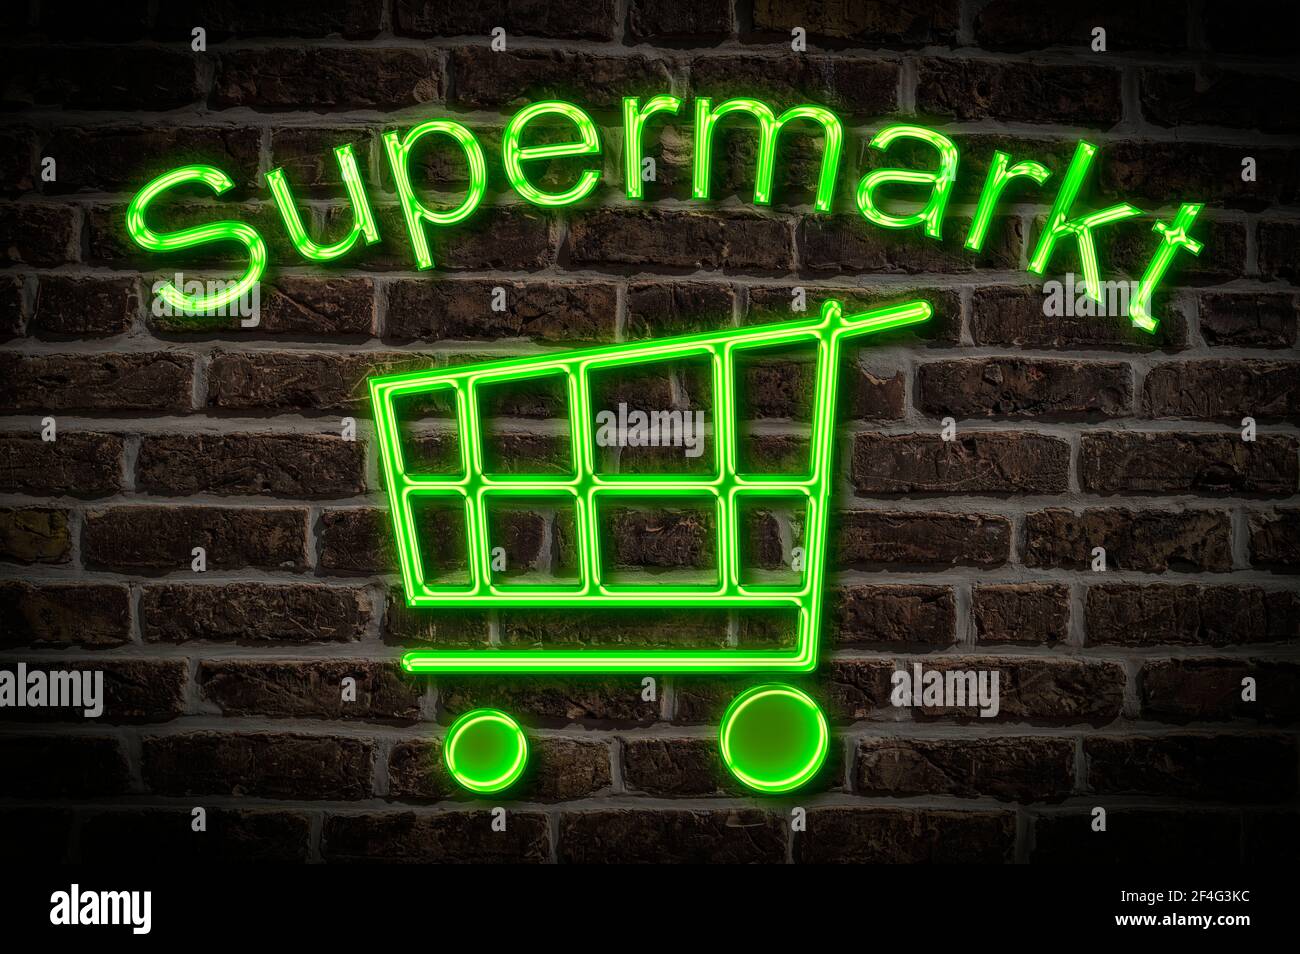 Leuchtreklame mit der Aufschrift Supermarkt, ein Einkaufswagen befindet sich unterhalb der Neon-Schrift | Illuminated advertisement for a Super Market Stock Photo